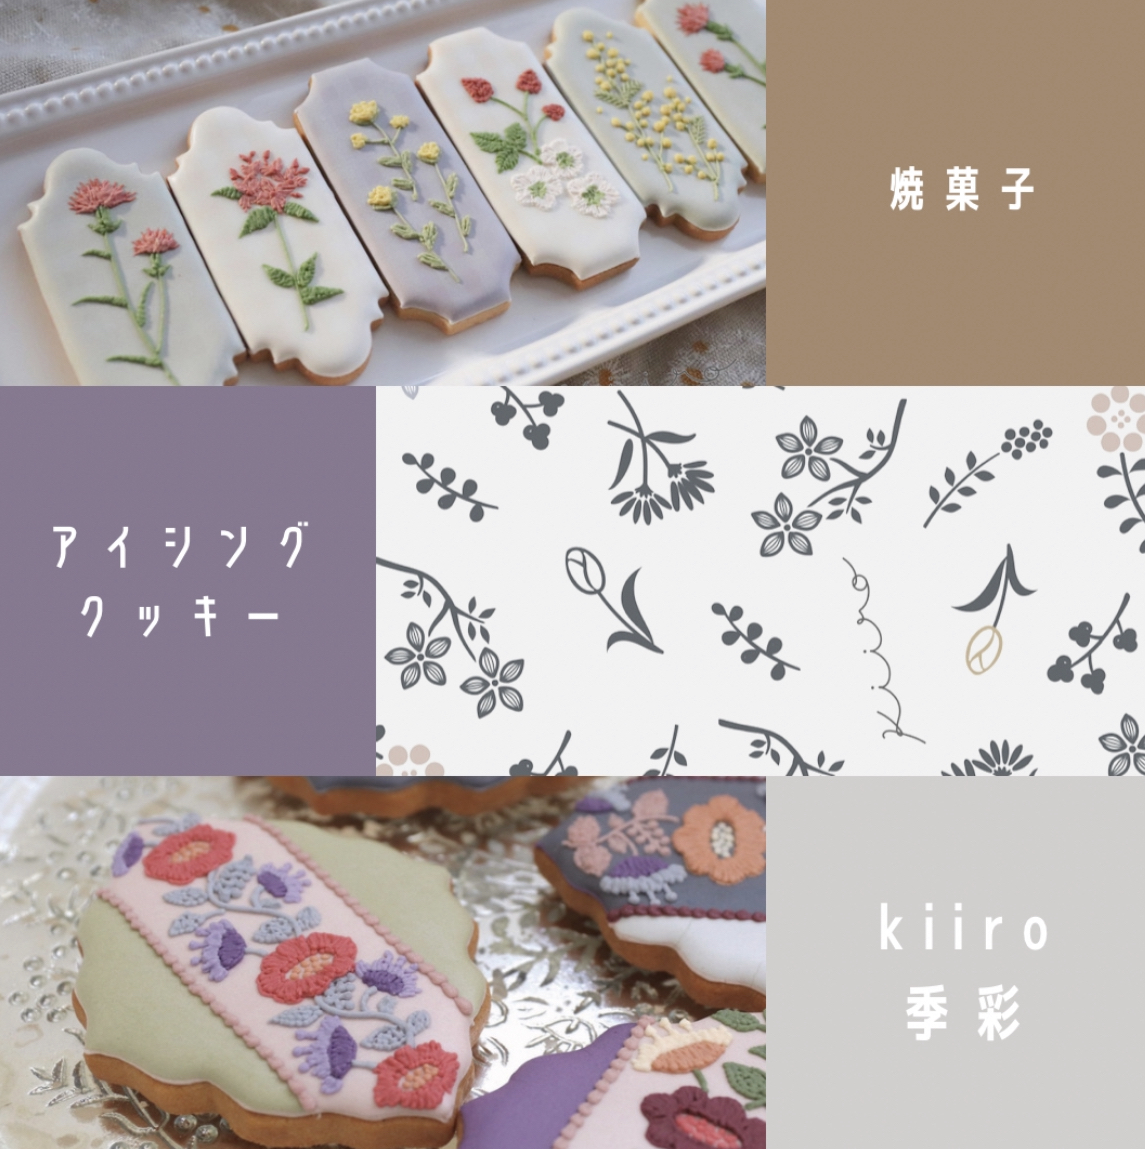 kiiro-季彩